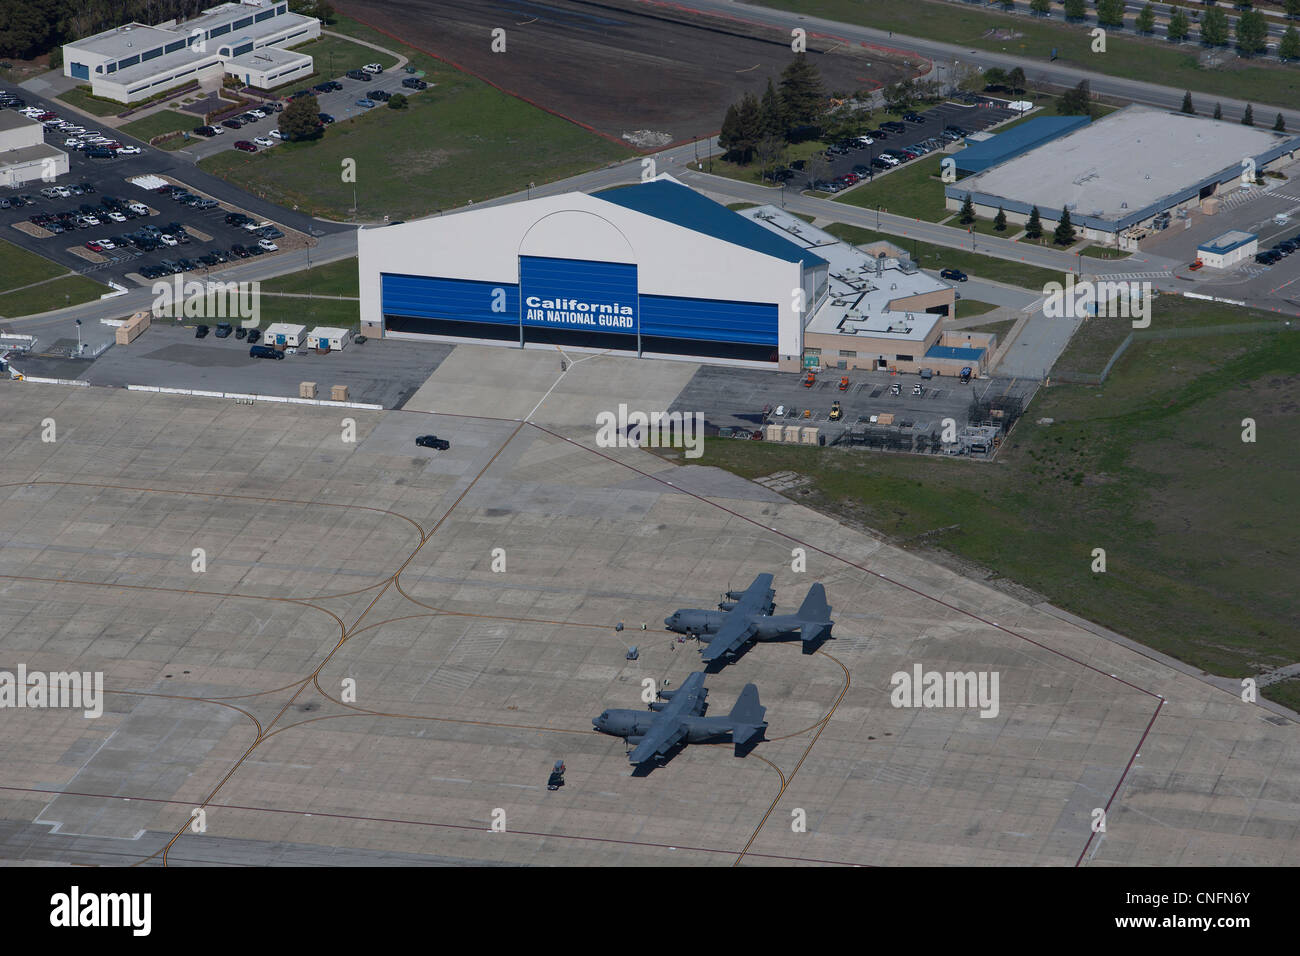 Photographie aérienne de l'Air National Guard Californie Moffett Field, Mountain View, Californie Banque D'Images